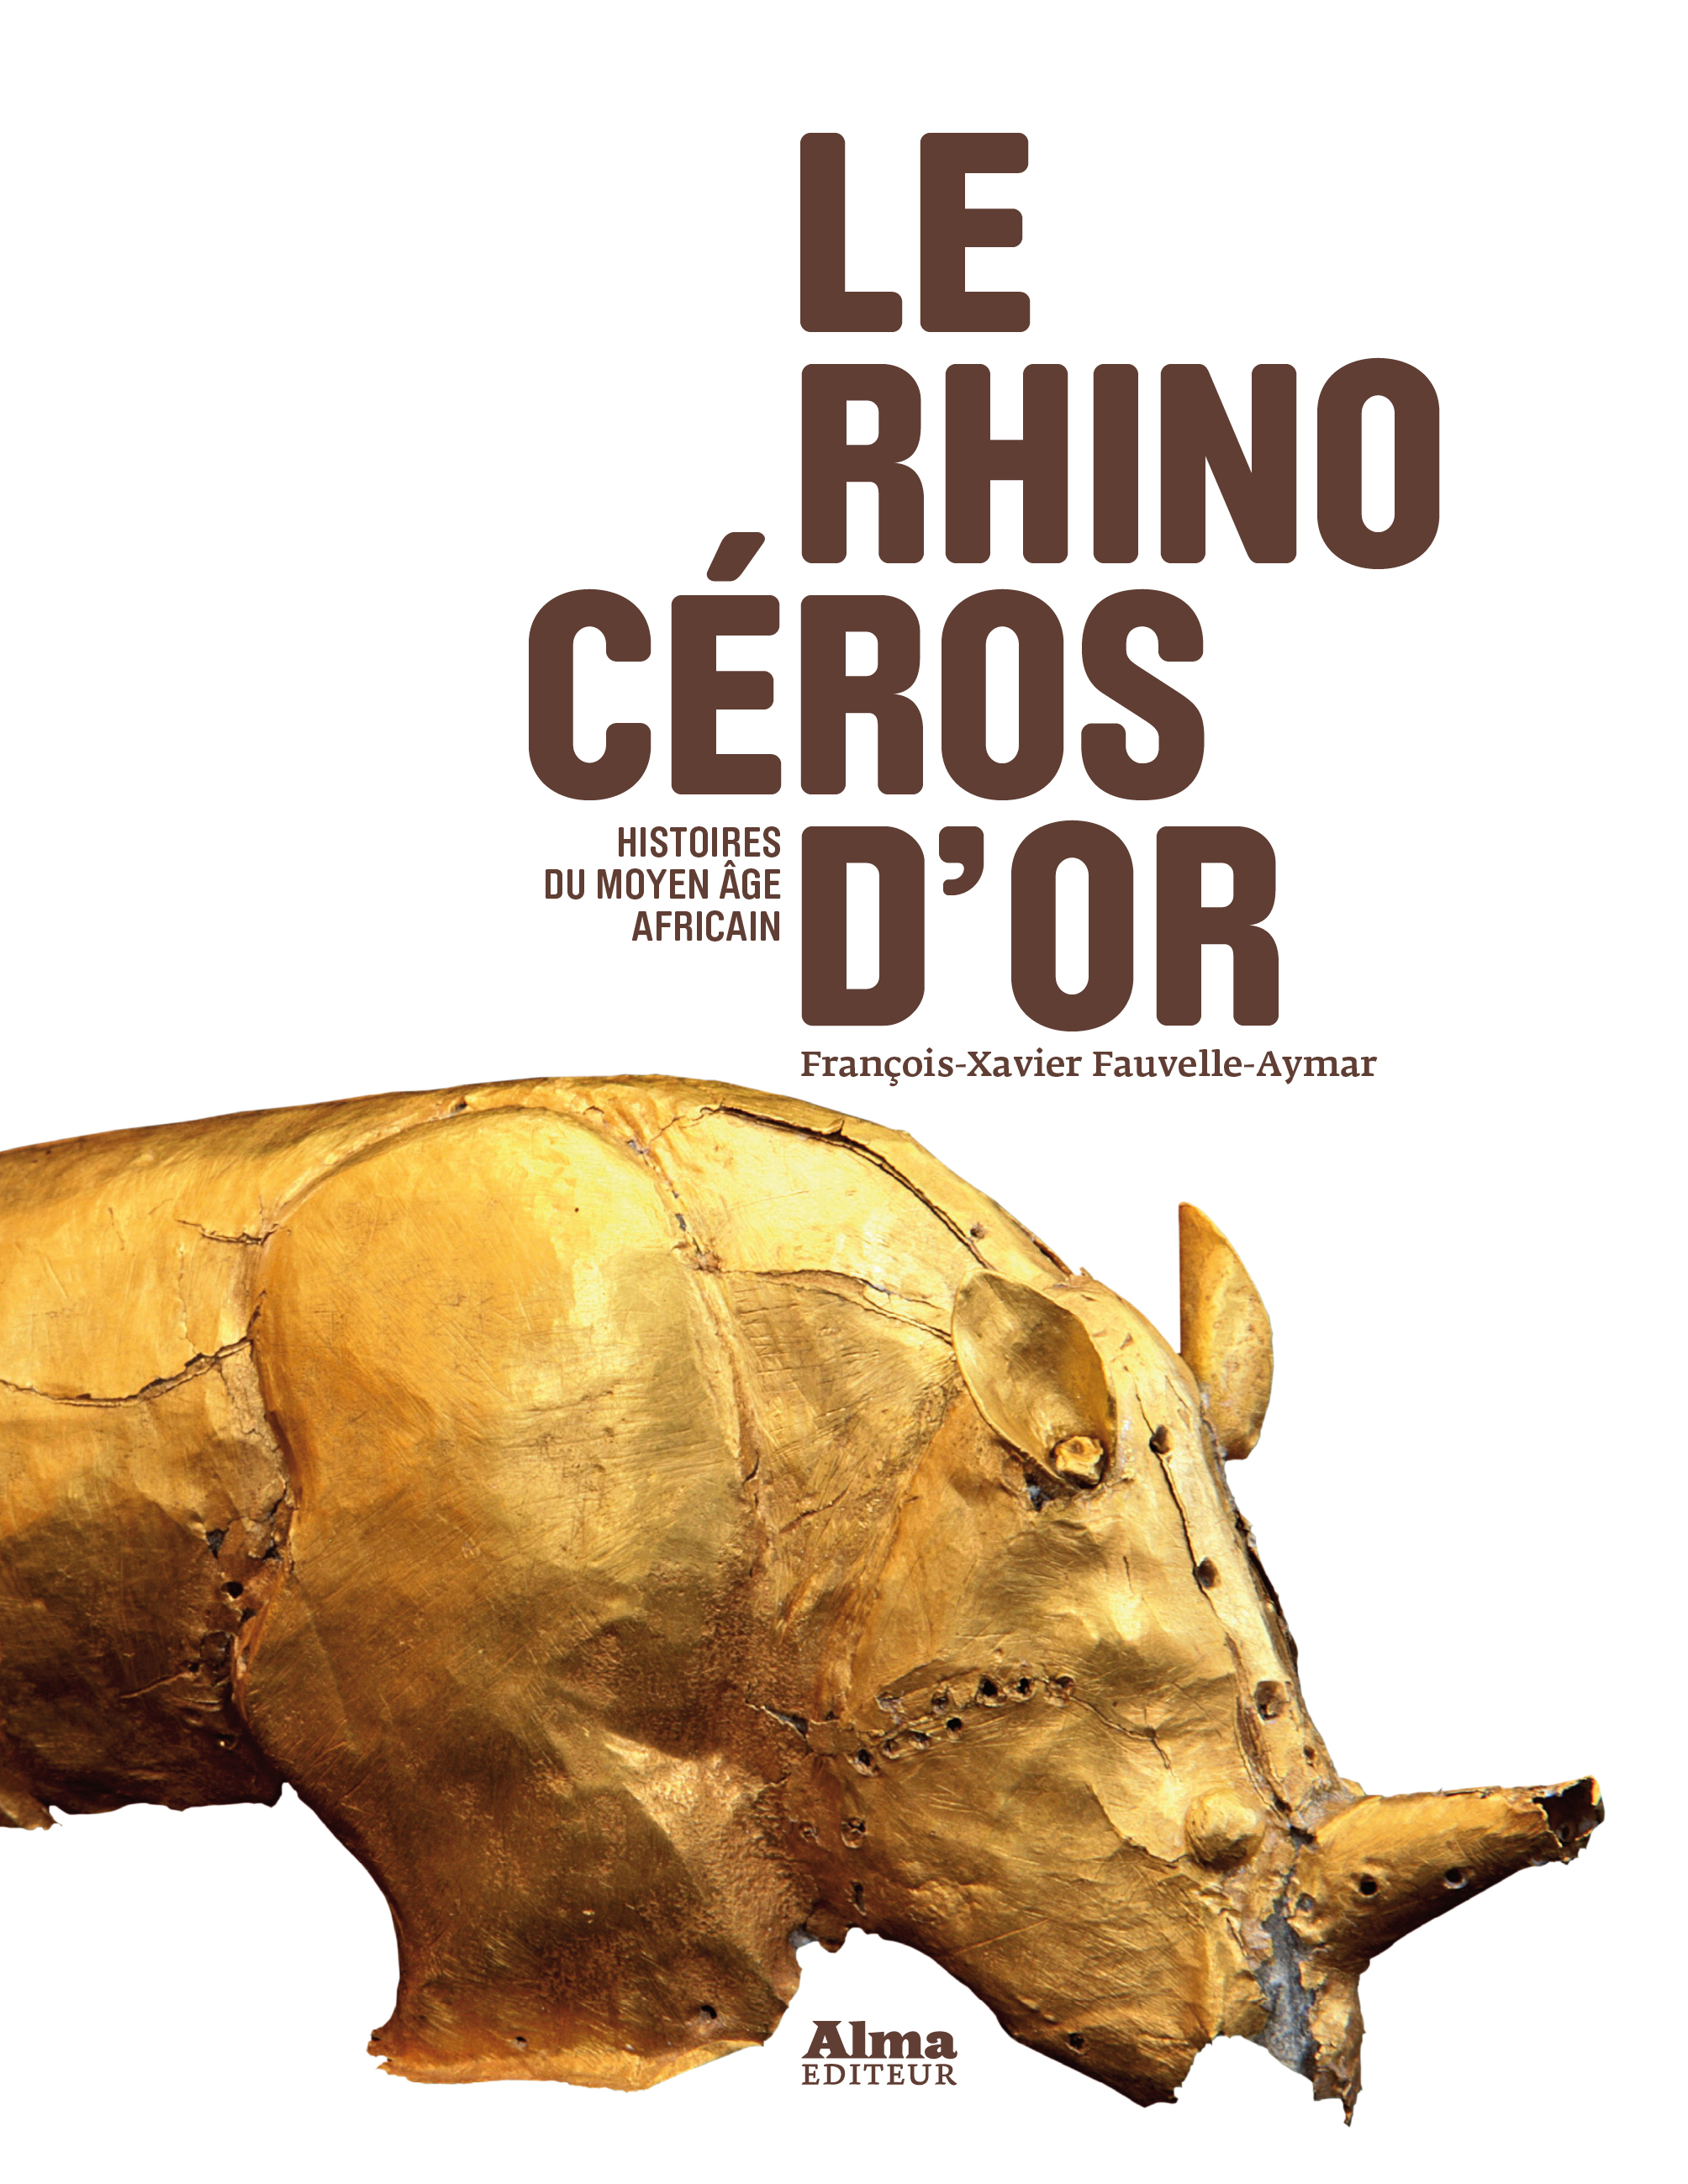 Le rhinocéros d'or. Histoires du Moyen Age africain, 2013, 317 p.